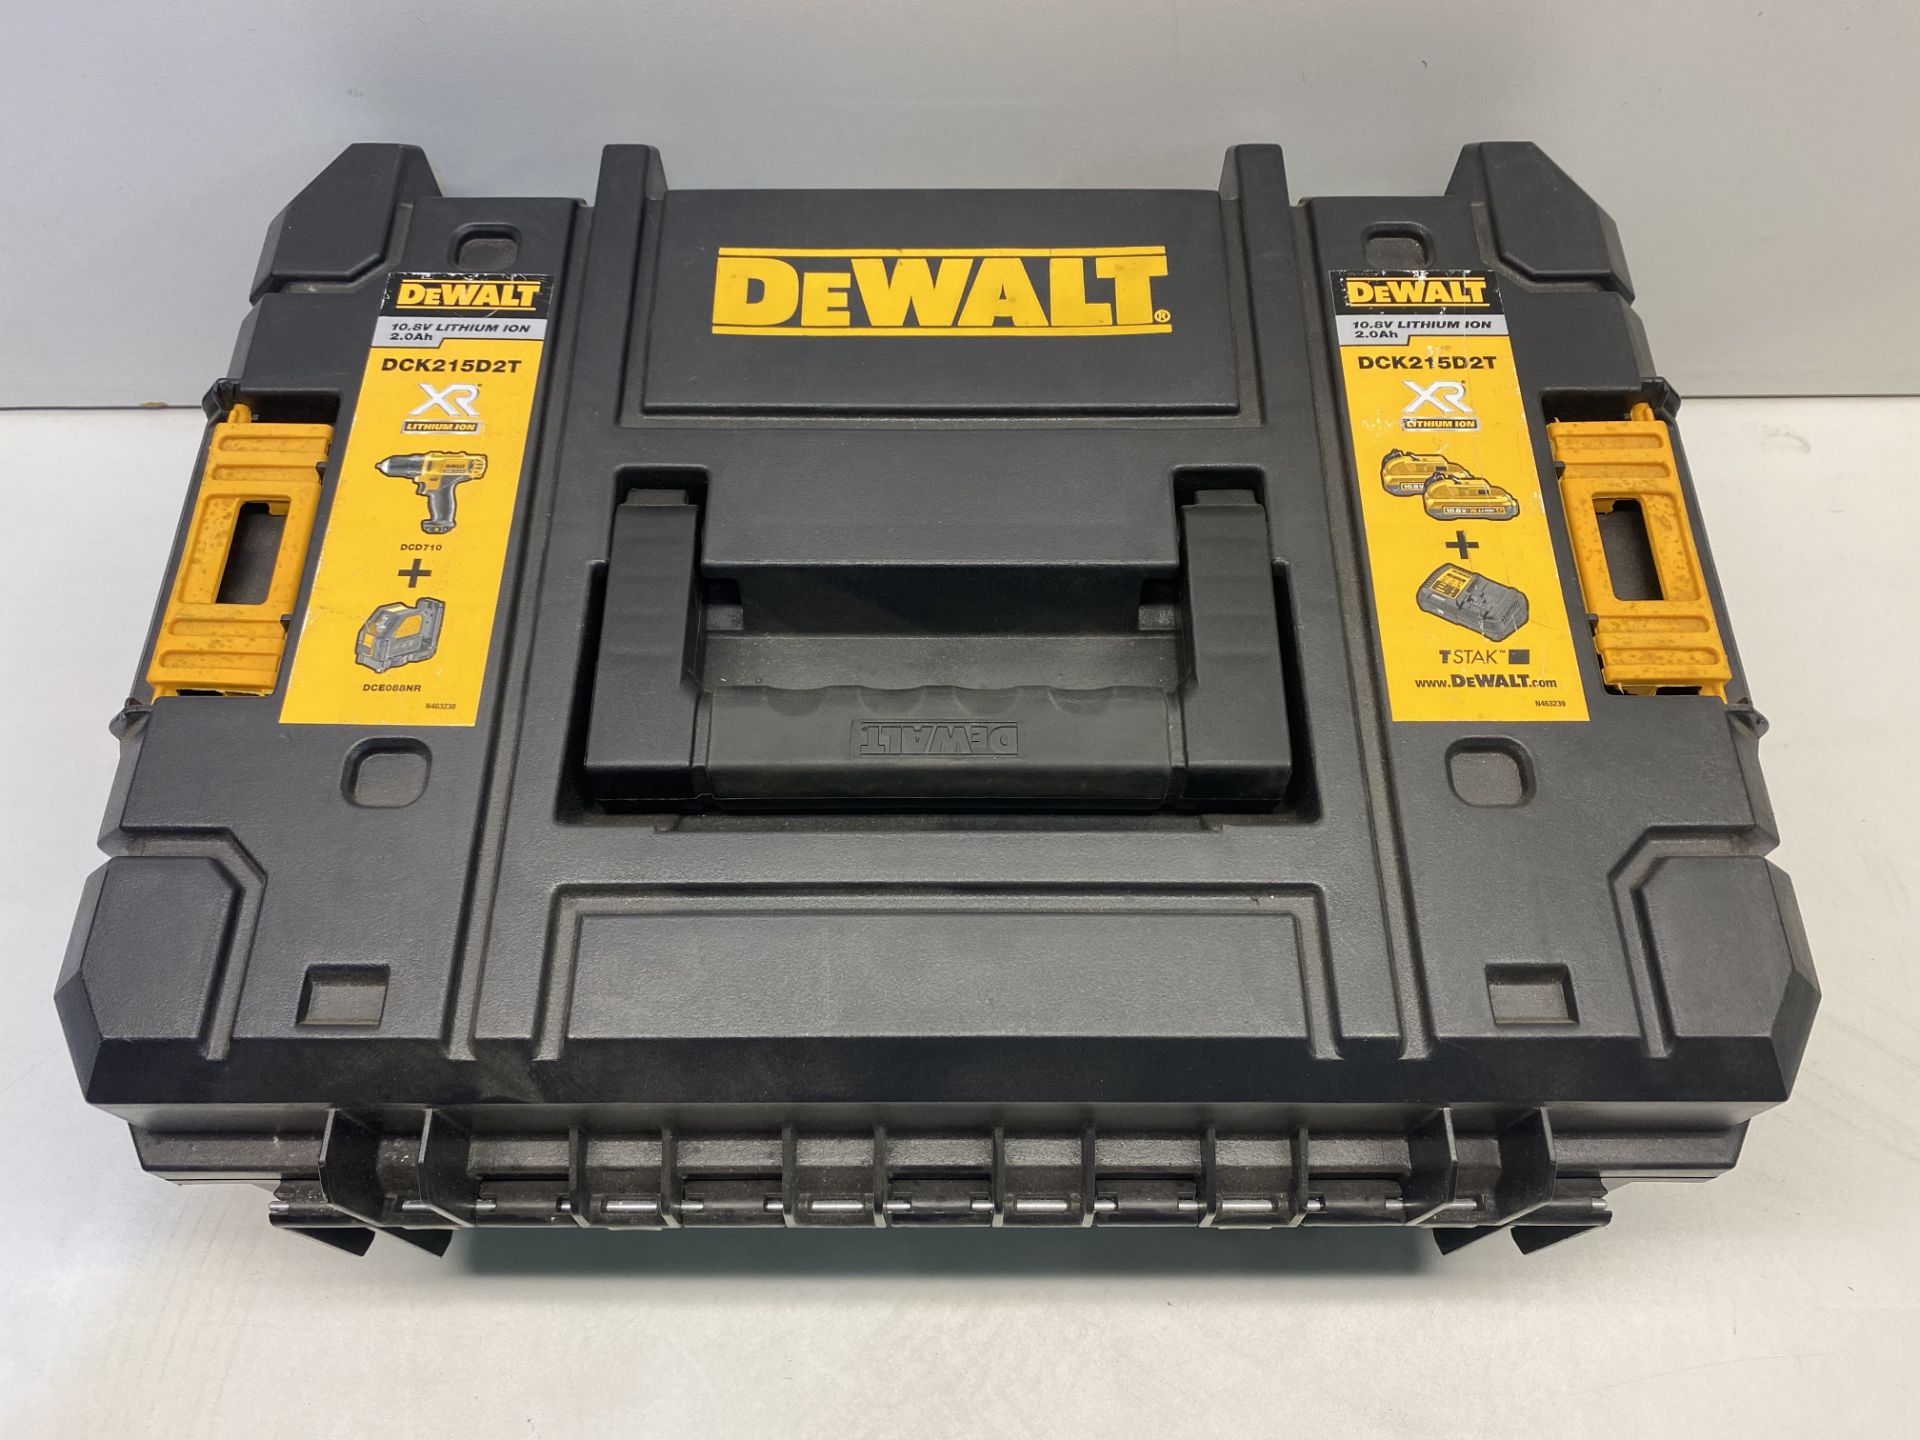 DeWALT DCK215D2T 10.8-Volt Drill 088 Laser Combo Kit T-STAK Carry Case & Dewalt DCB115 Battery Charg - Image 2 of 3